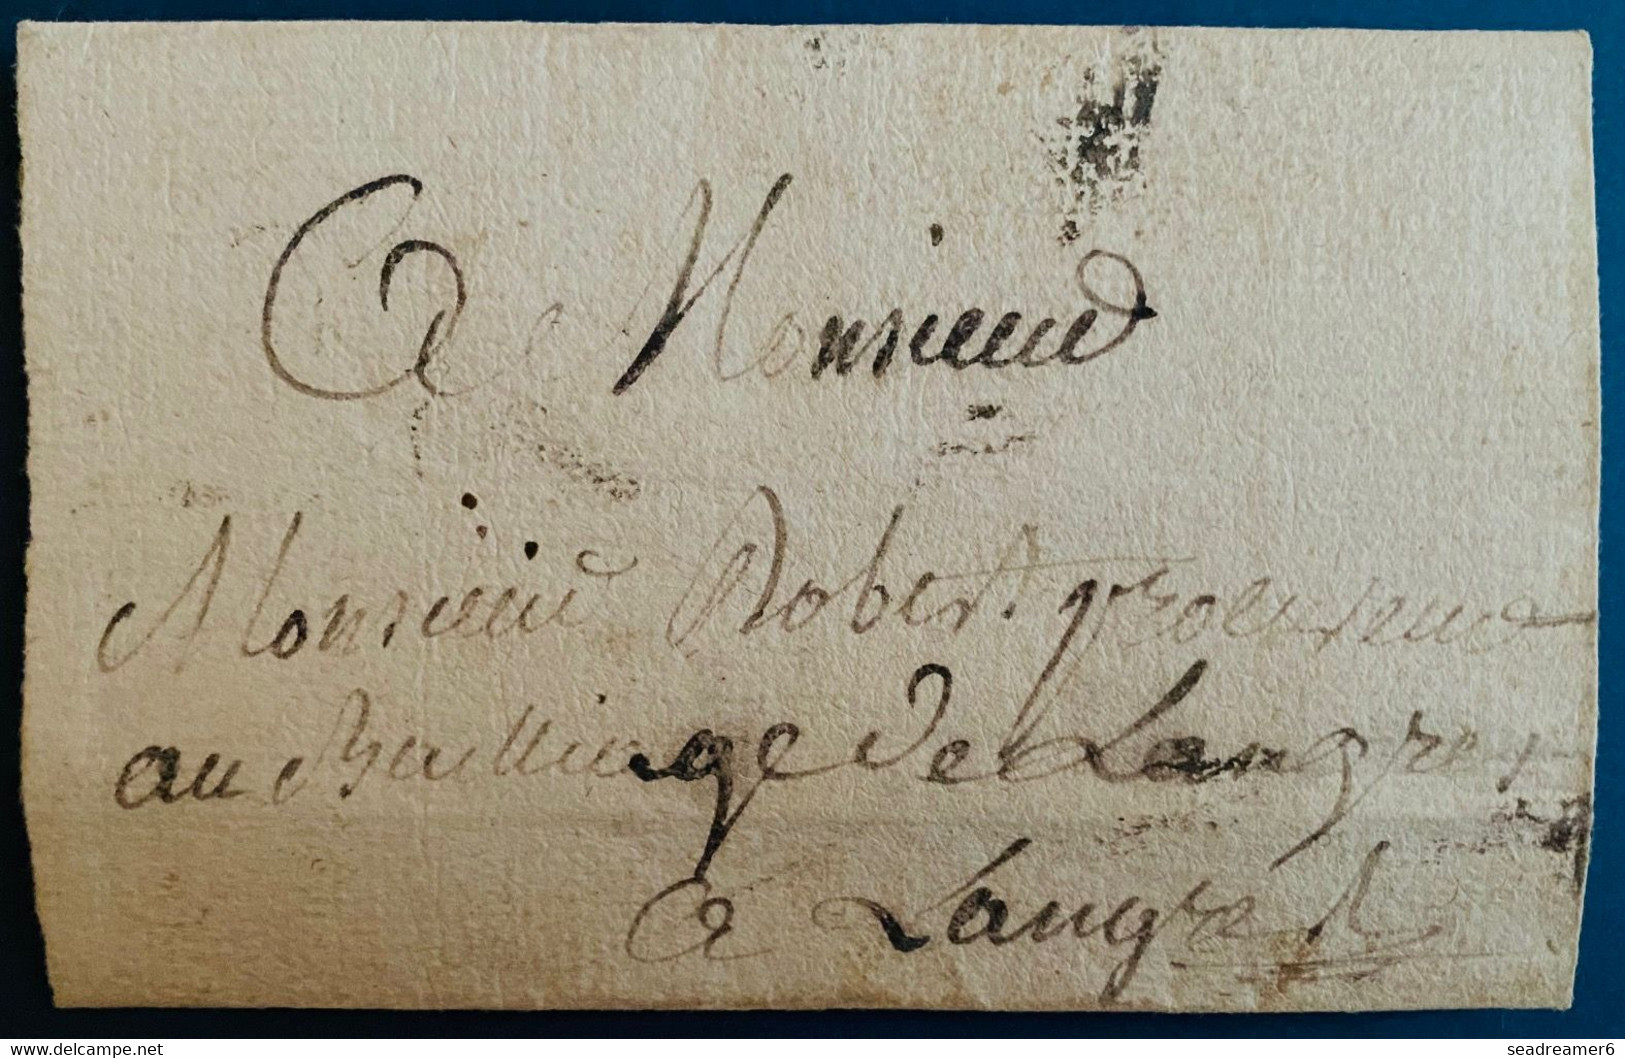 France Lettre Du 16 Aout 1780 !! De Lavernoy Pour Le Procureur De Langres TTB - ....-1700: Voorlopers